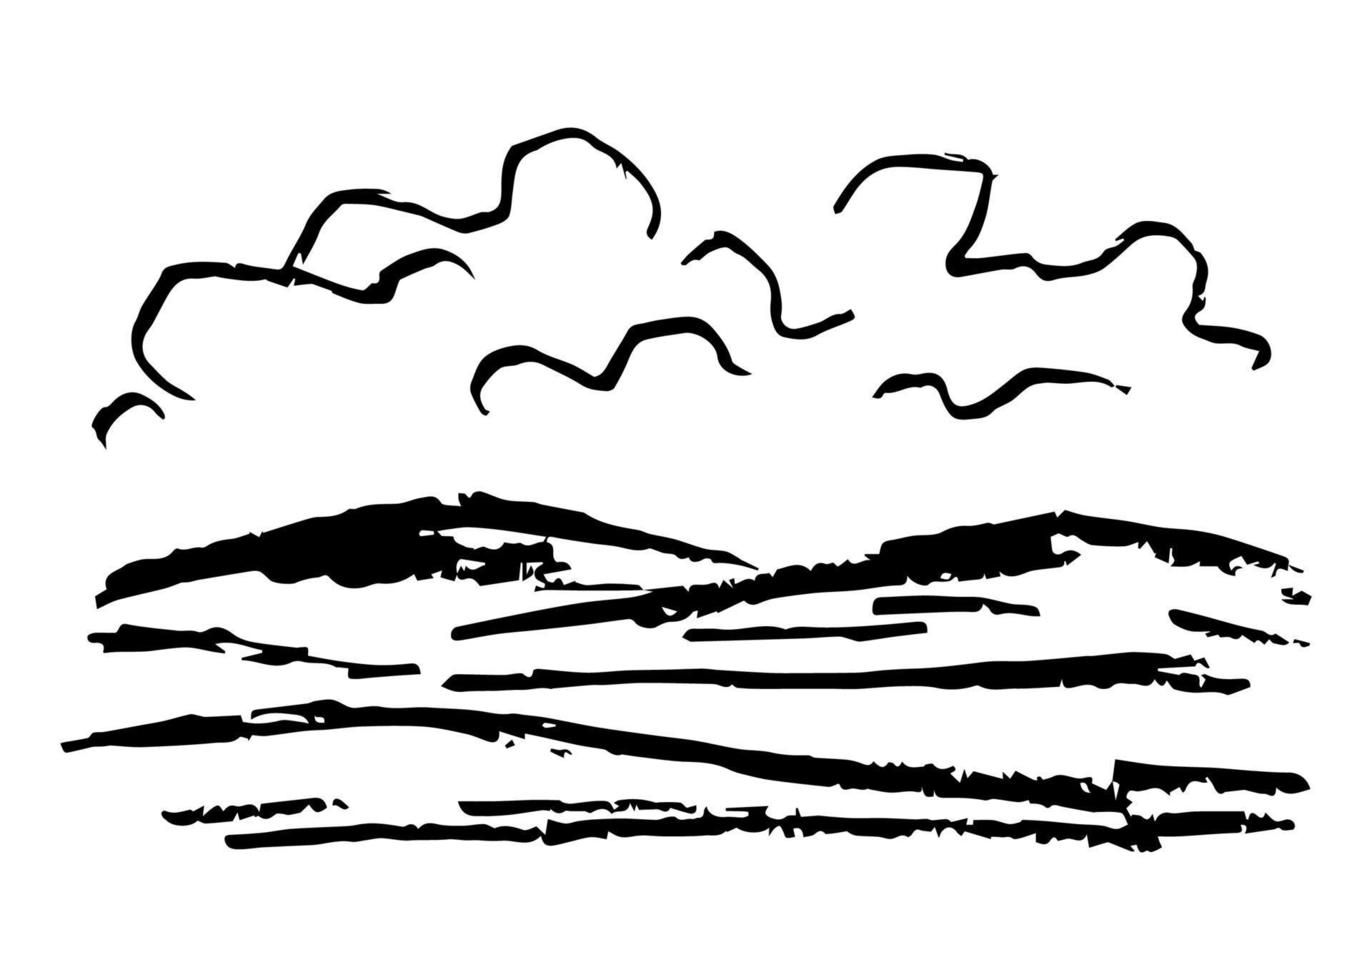 dessin vectoriel simple de crayon de charbon de bois. nature, paysage, météo, climat. silhouette de montagnes, nuages. croquis noir et blanc.